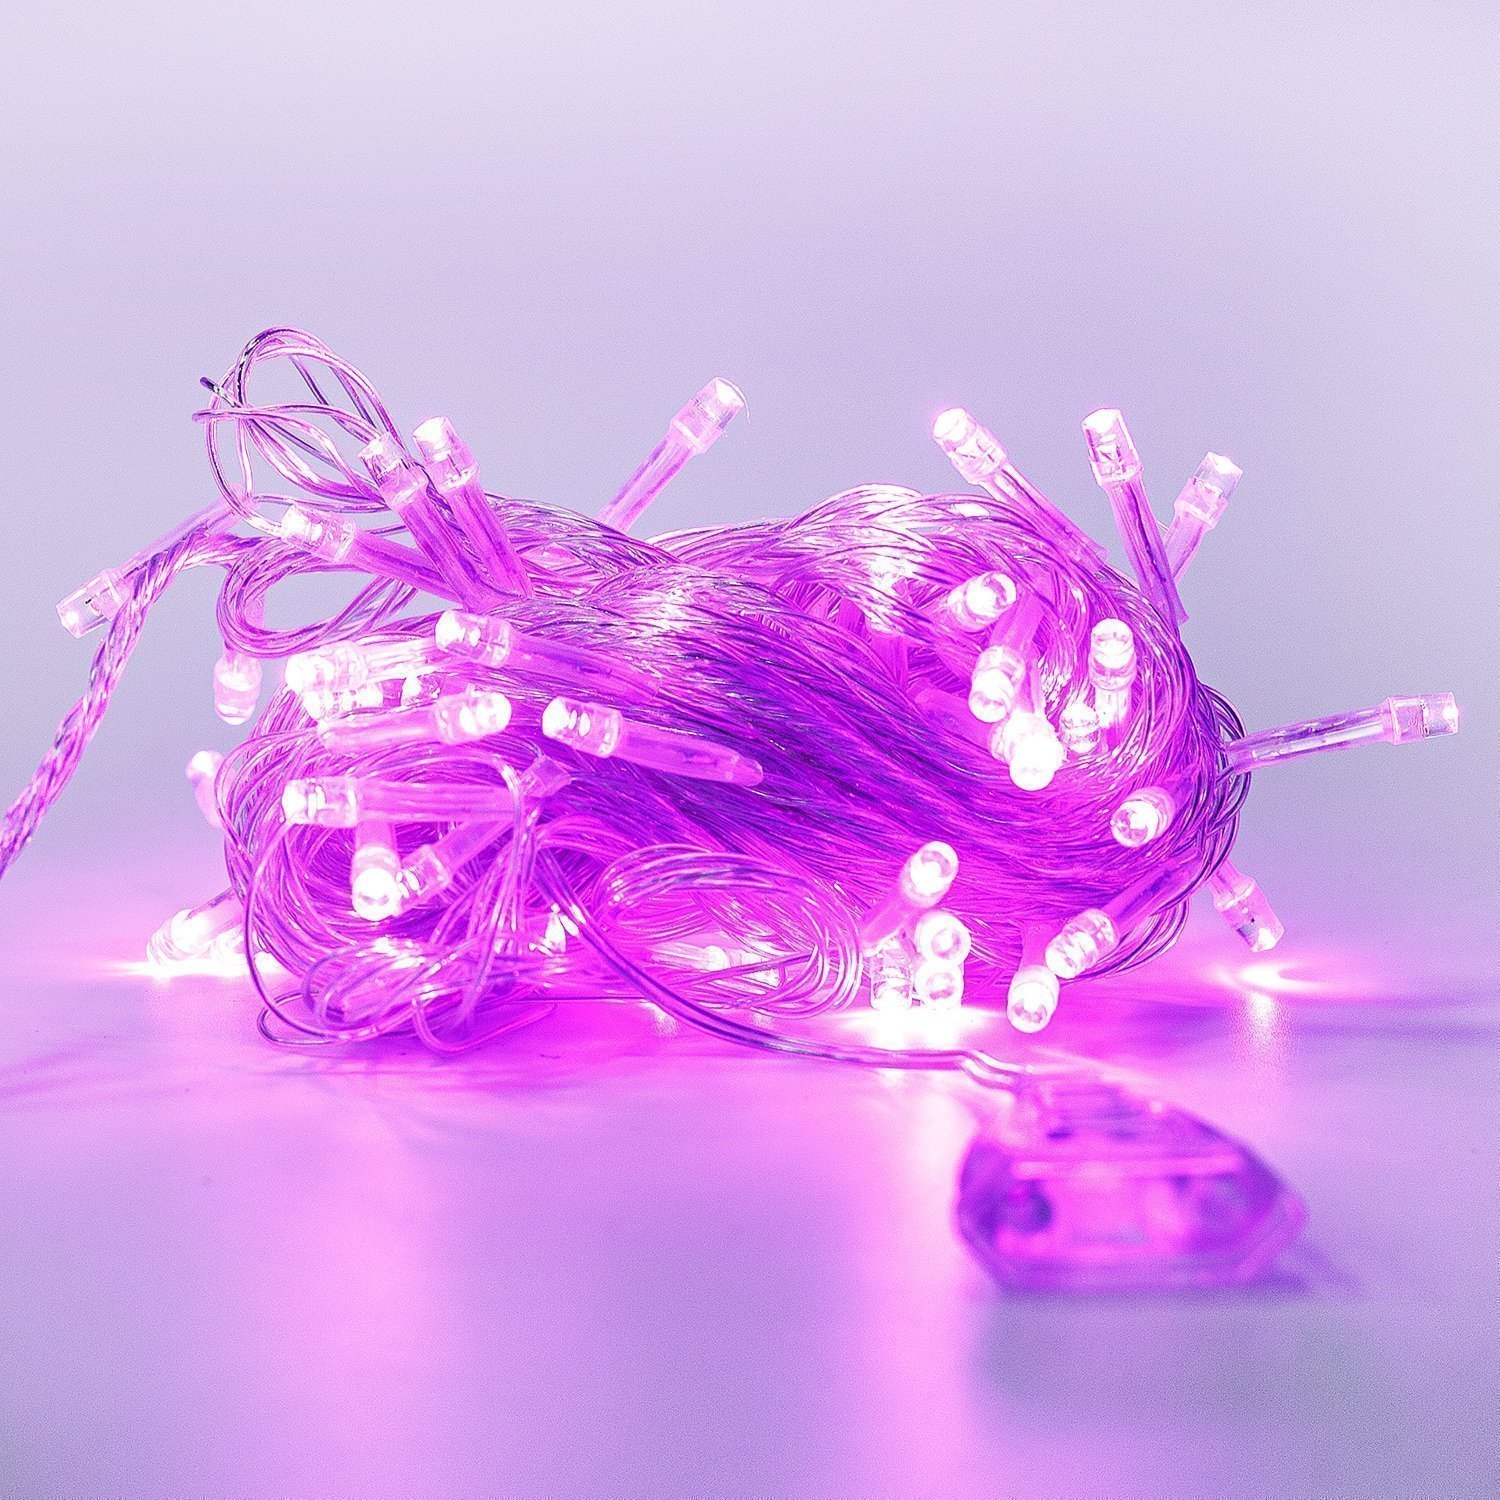 Гирлянда Kurato светодиодная нить, ламп: 80 шт., 8 м, режимов: 1, от сети, фиолетовый (132716)